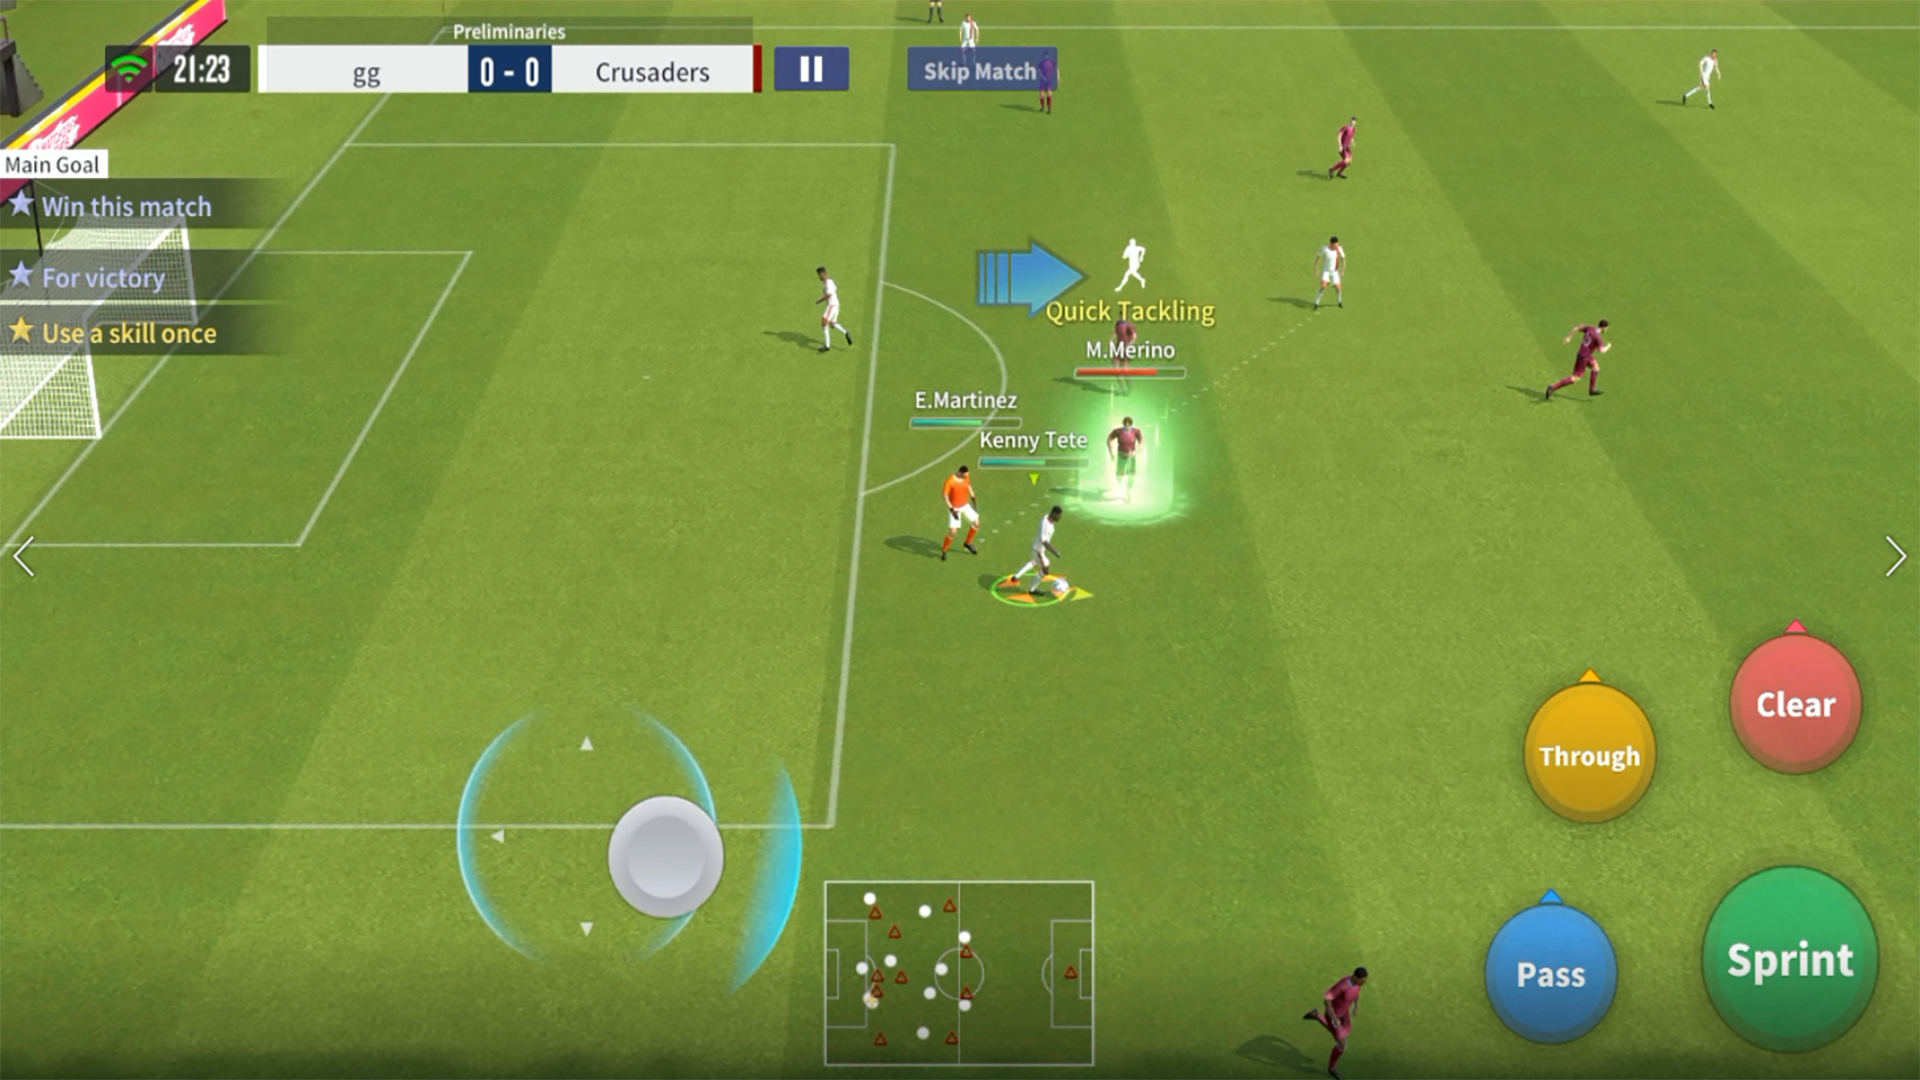 Soccer Stars - Jogo de futebol de botão para Android e iPhone